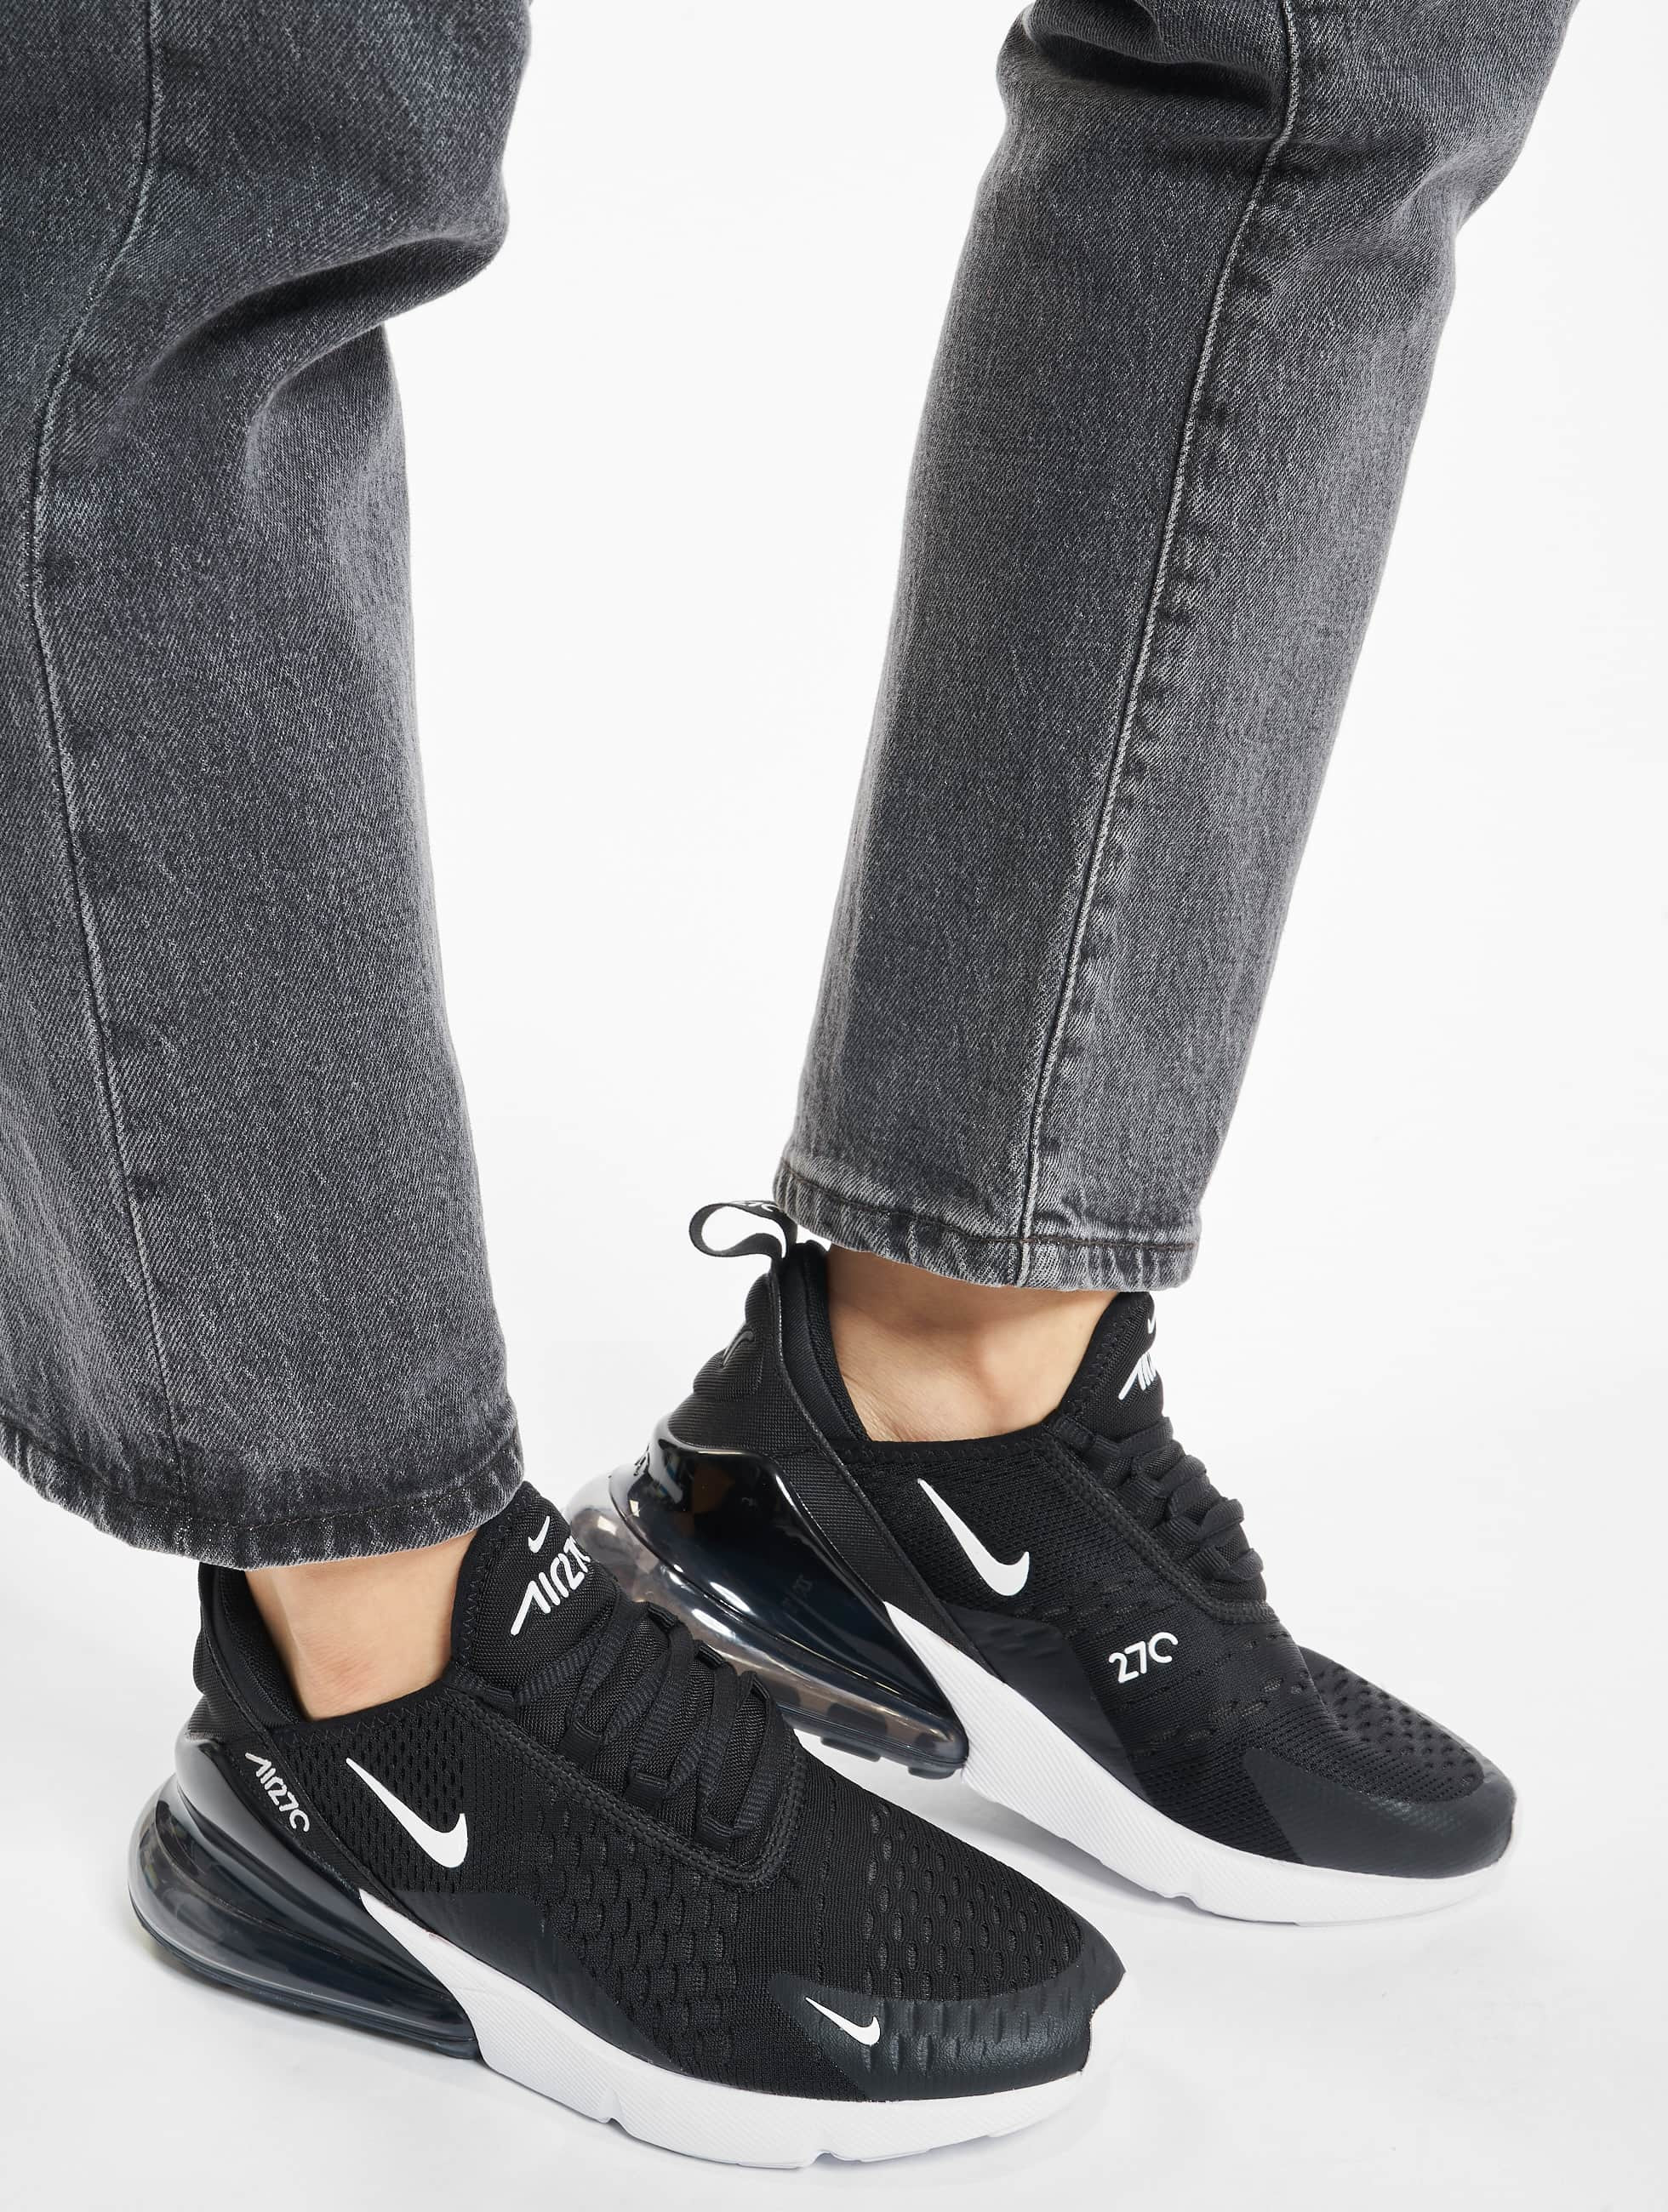 Weekendtas mond Ongedaan maken Nike schoen / sneaker Air Max 270 in zwart 443490